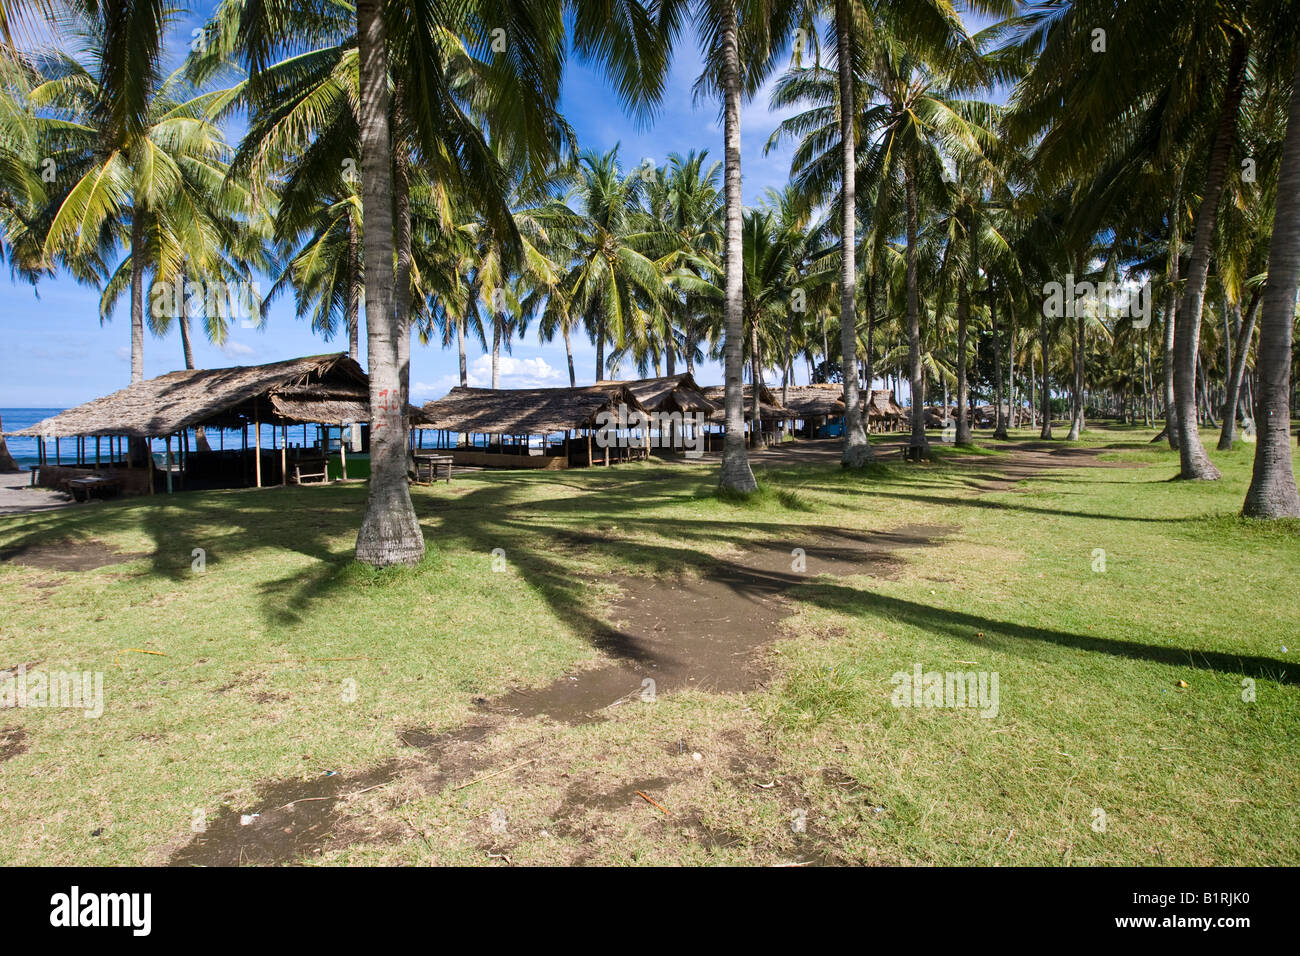 Capanne su un Palm tree plantation, sulla spiaggia, Isola di Lombok, Lesser Sunda Islands, Indonesia, Asia Foto Stock